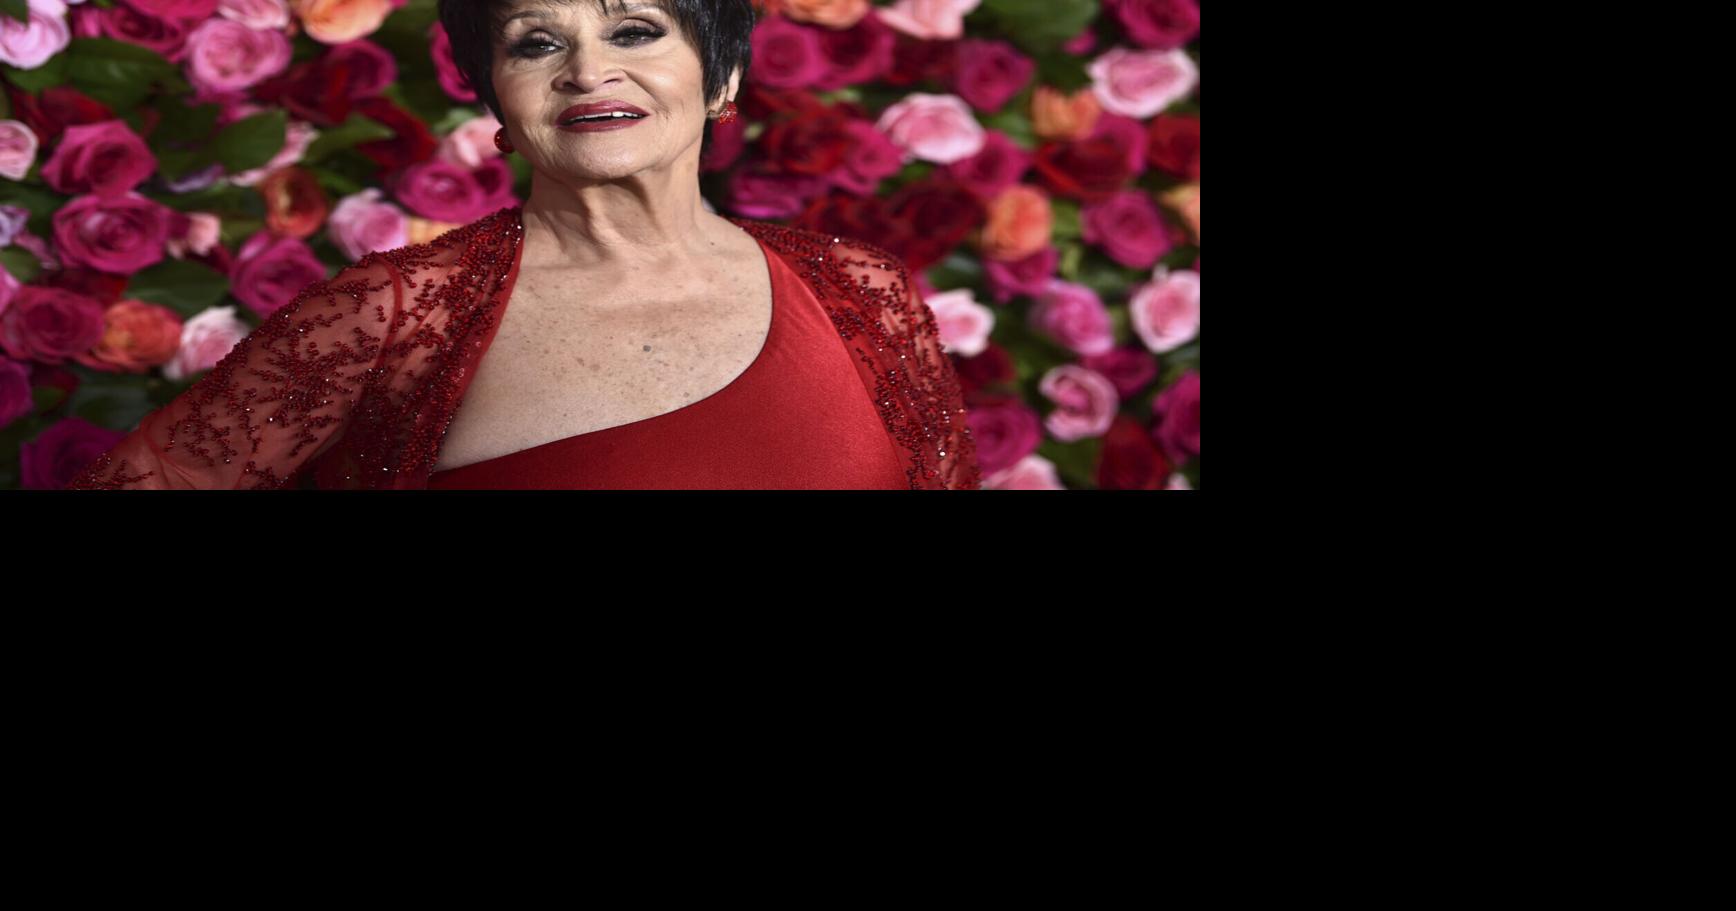 Broadway legend Chita Rivera dies at 91